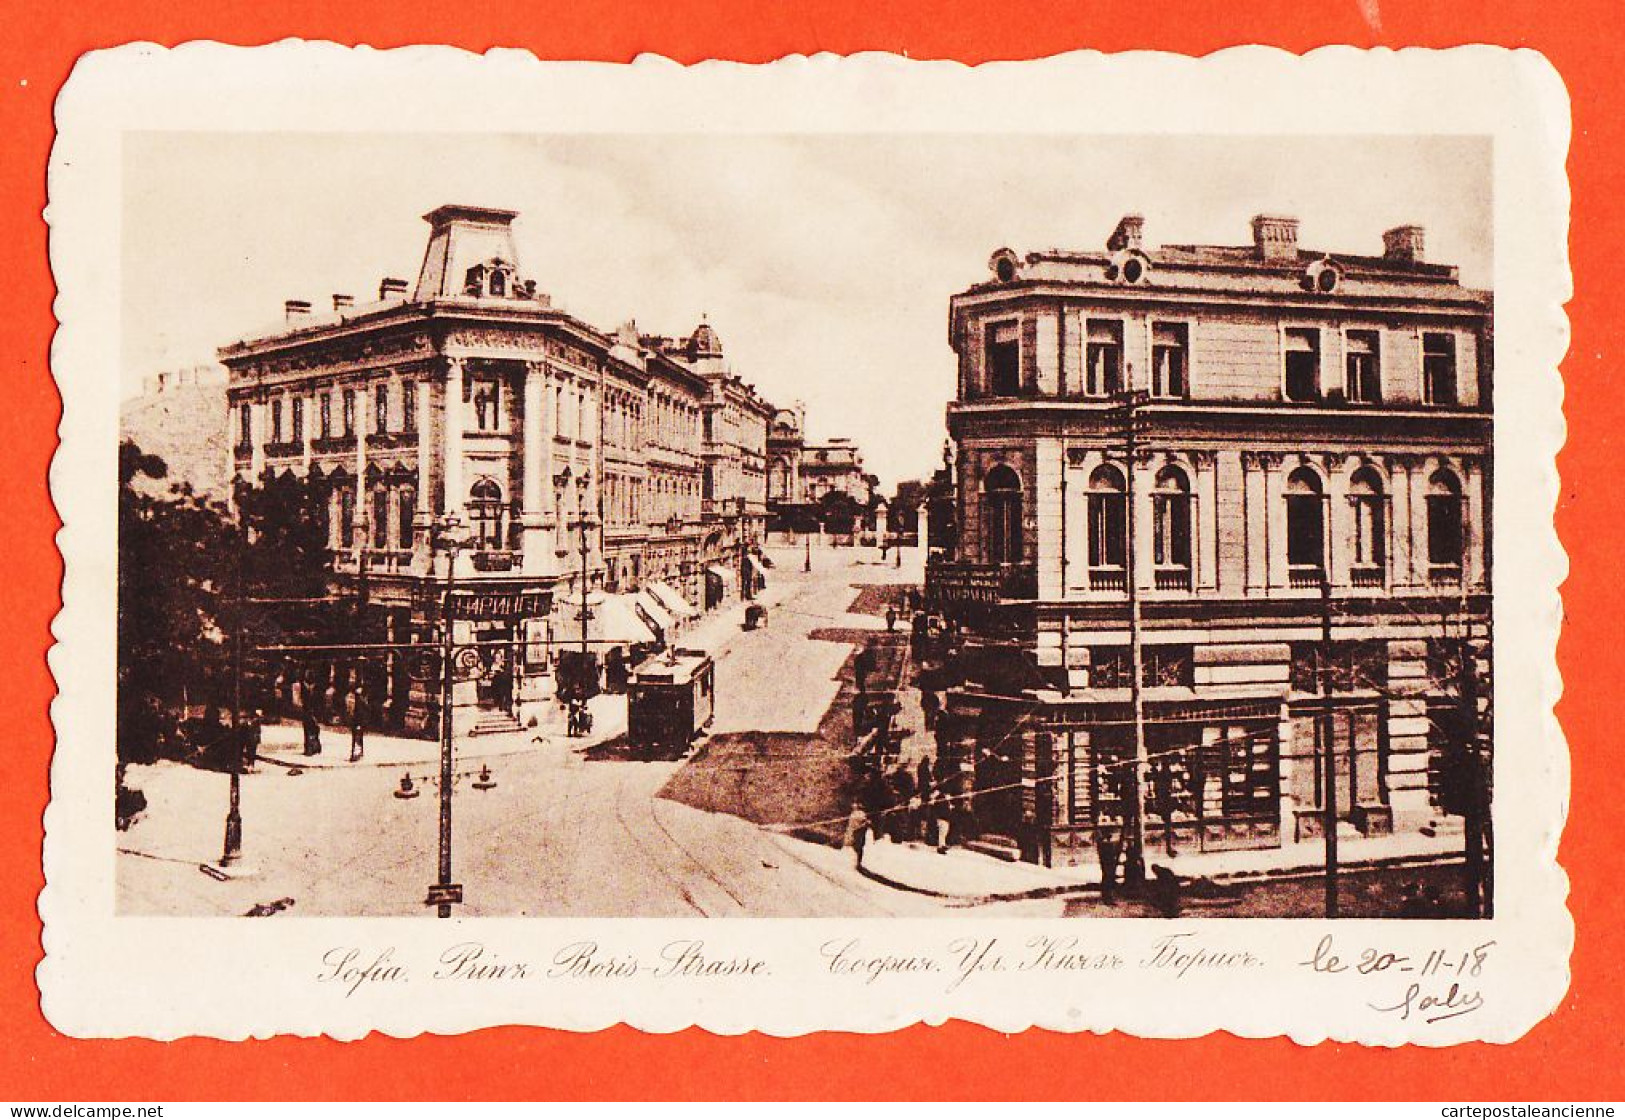 06490 / SOFIA Guerre 1914 Lisez 20-11-1918 PRINZ BORIS-Strasse Strasse à Gabriel REY Réalmont - Bulgarie